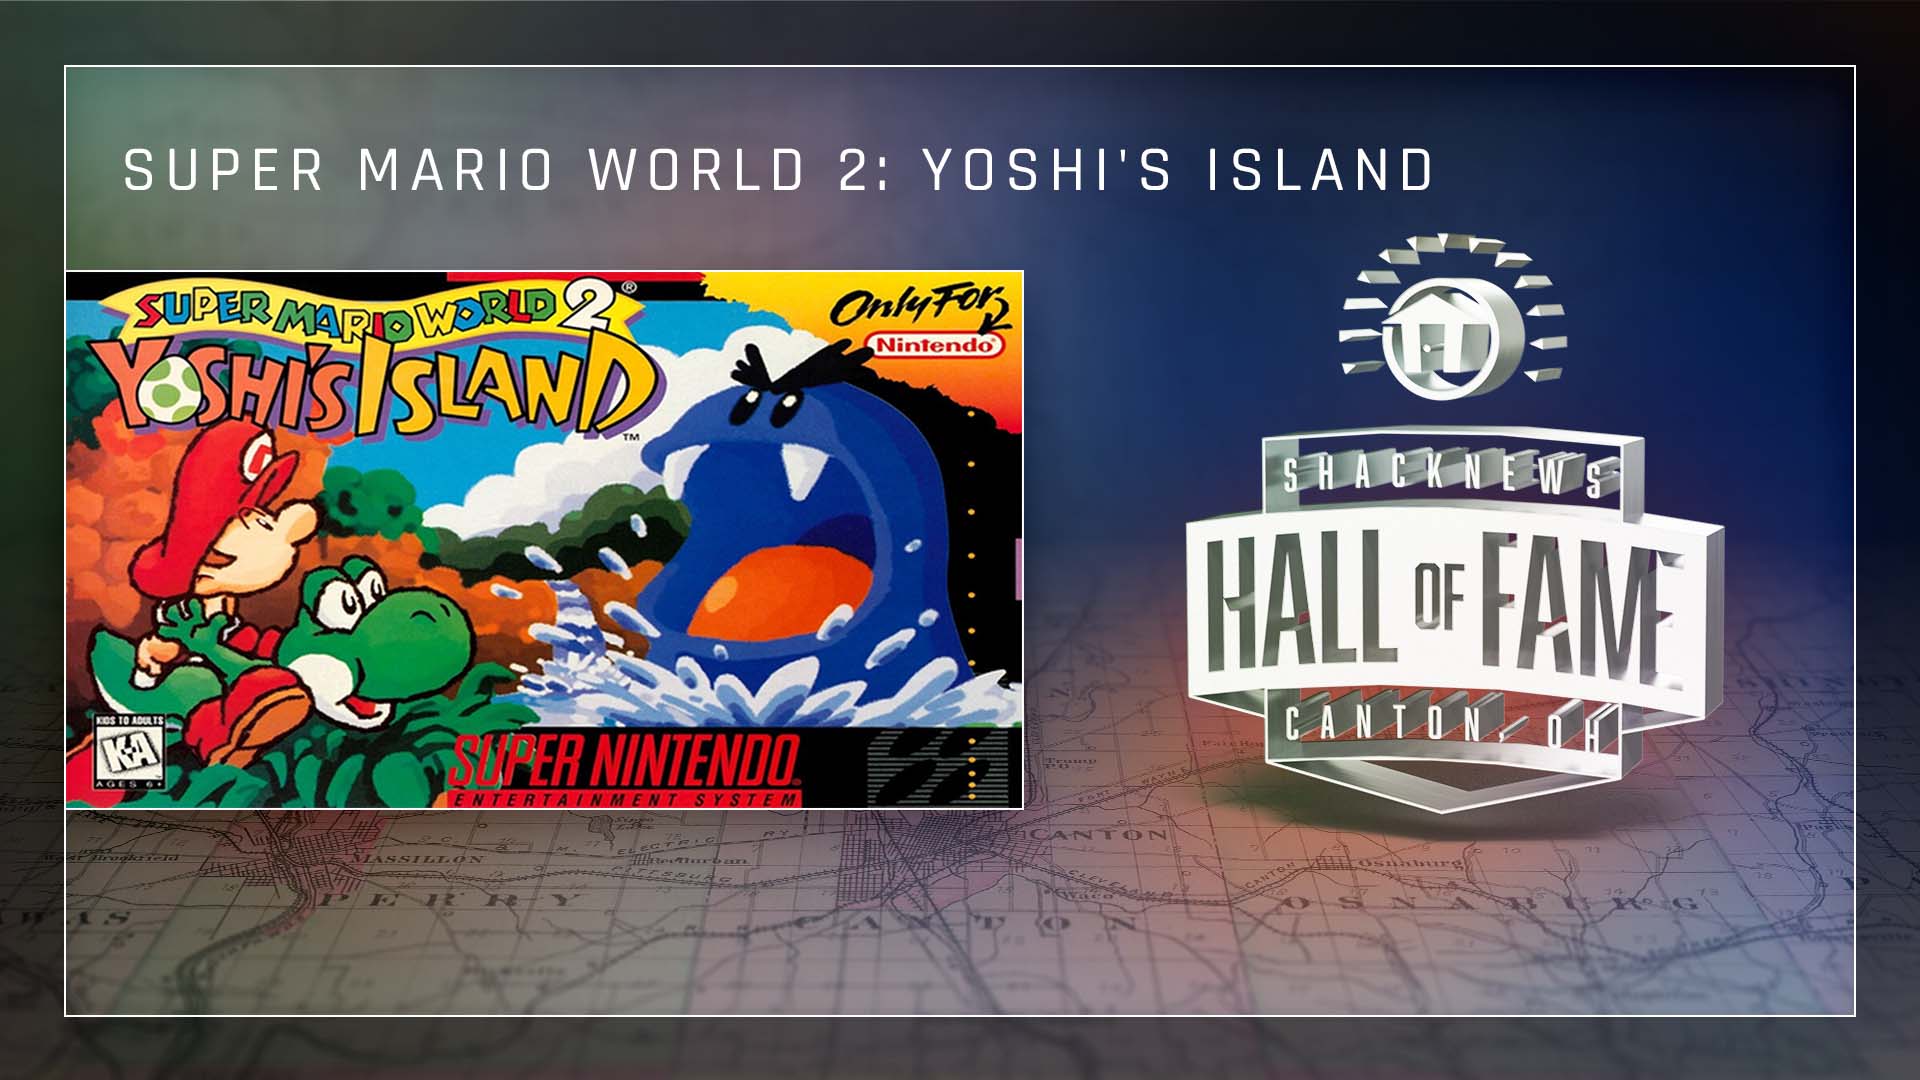 Super Mario World 2: Yoshi's Island.